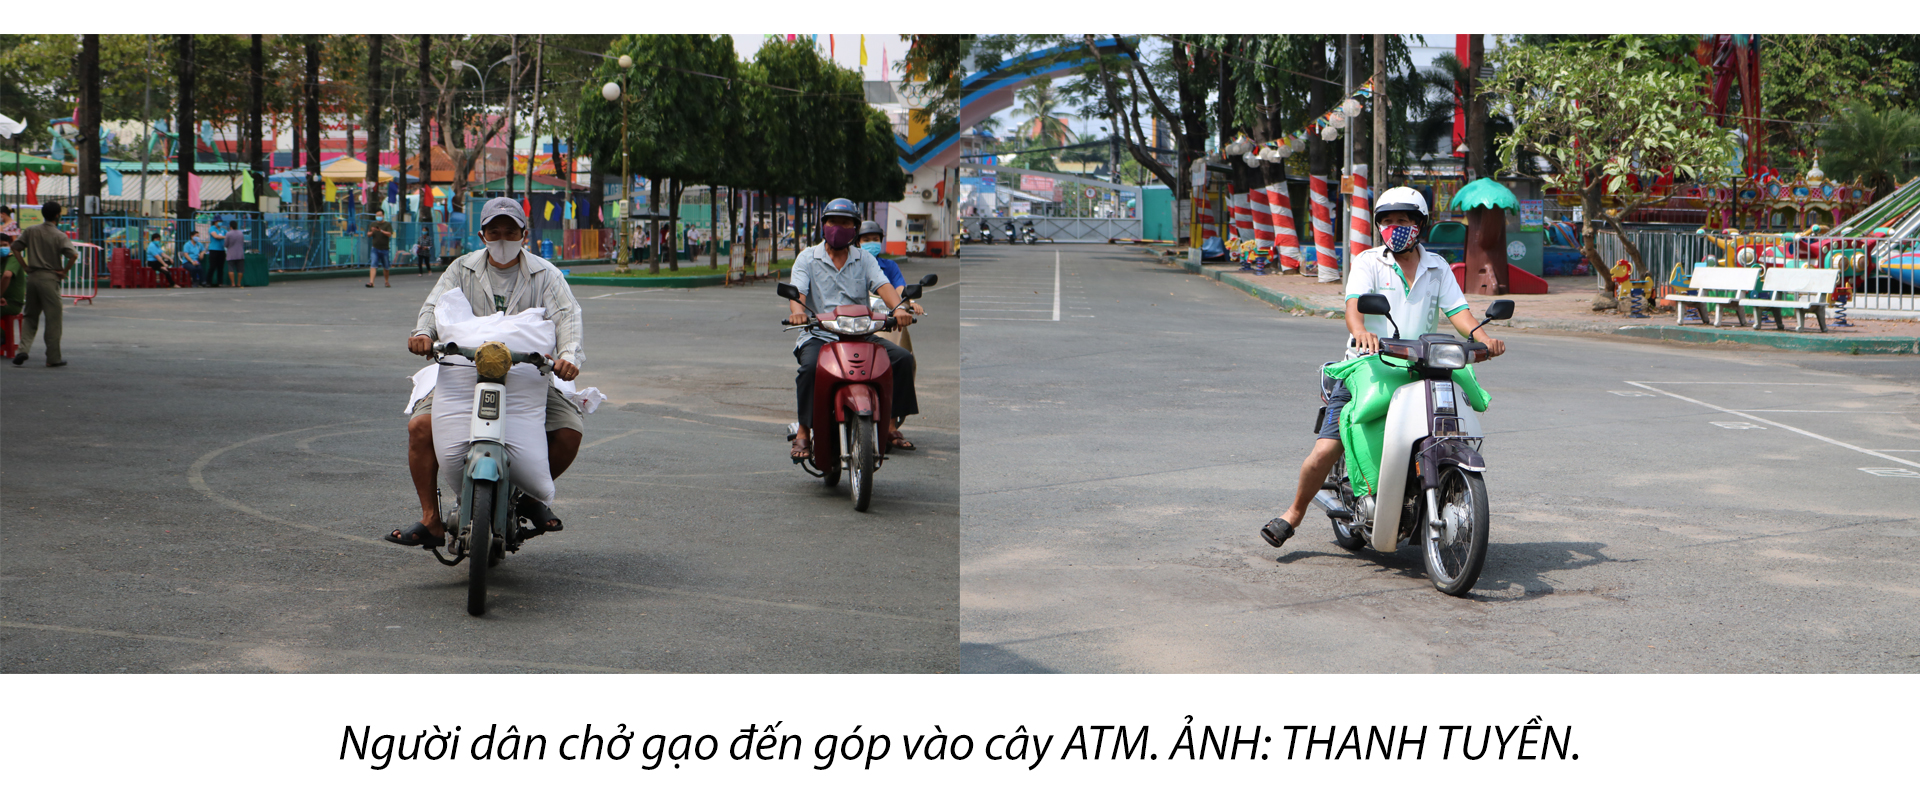 Đi qua mùa dịch: Người Sài Gòn đúng thật 'tánh kỳ' - ảnh 3